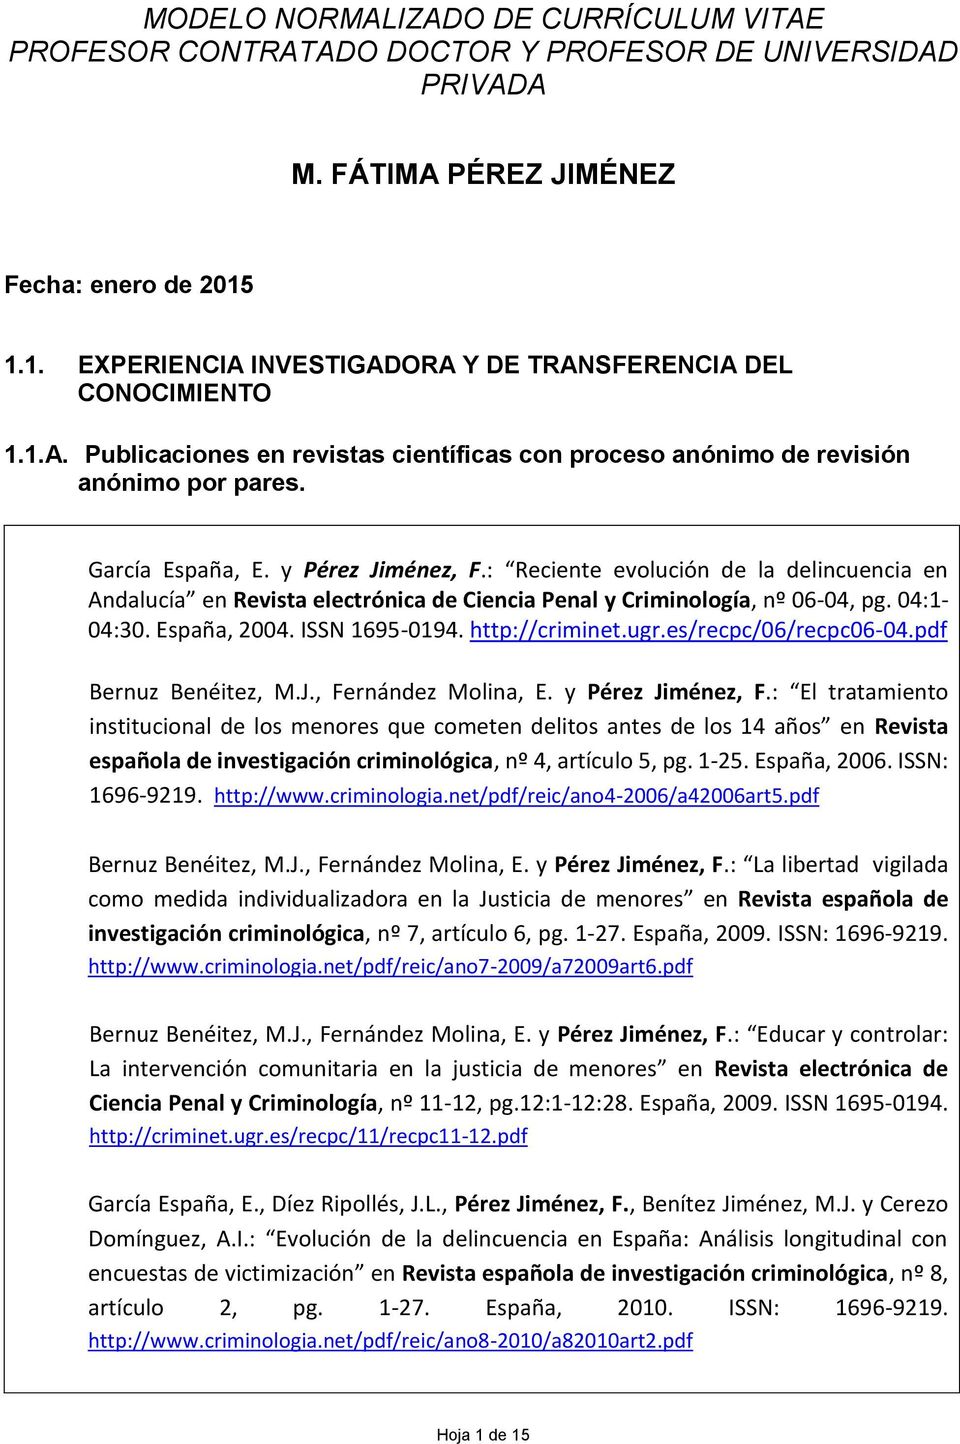 : Reciente evolución de la delincuencia en Andalucía en Revista electrónica de Ciencia Penal y Criminología, nº 06-04, pg. 04:1-04:30. España, 2004. ISSN 1695-0194. http://criminet.ugr.